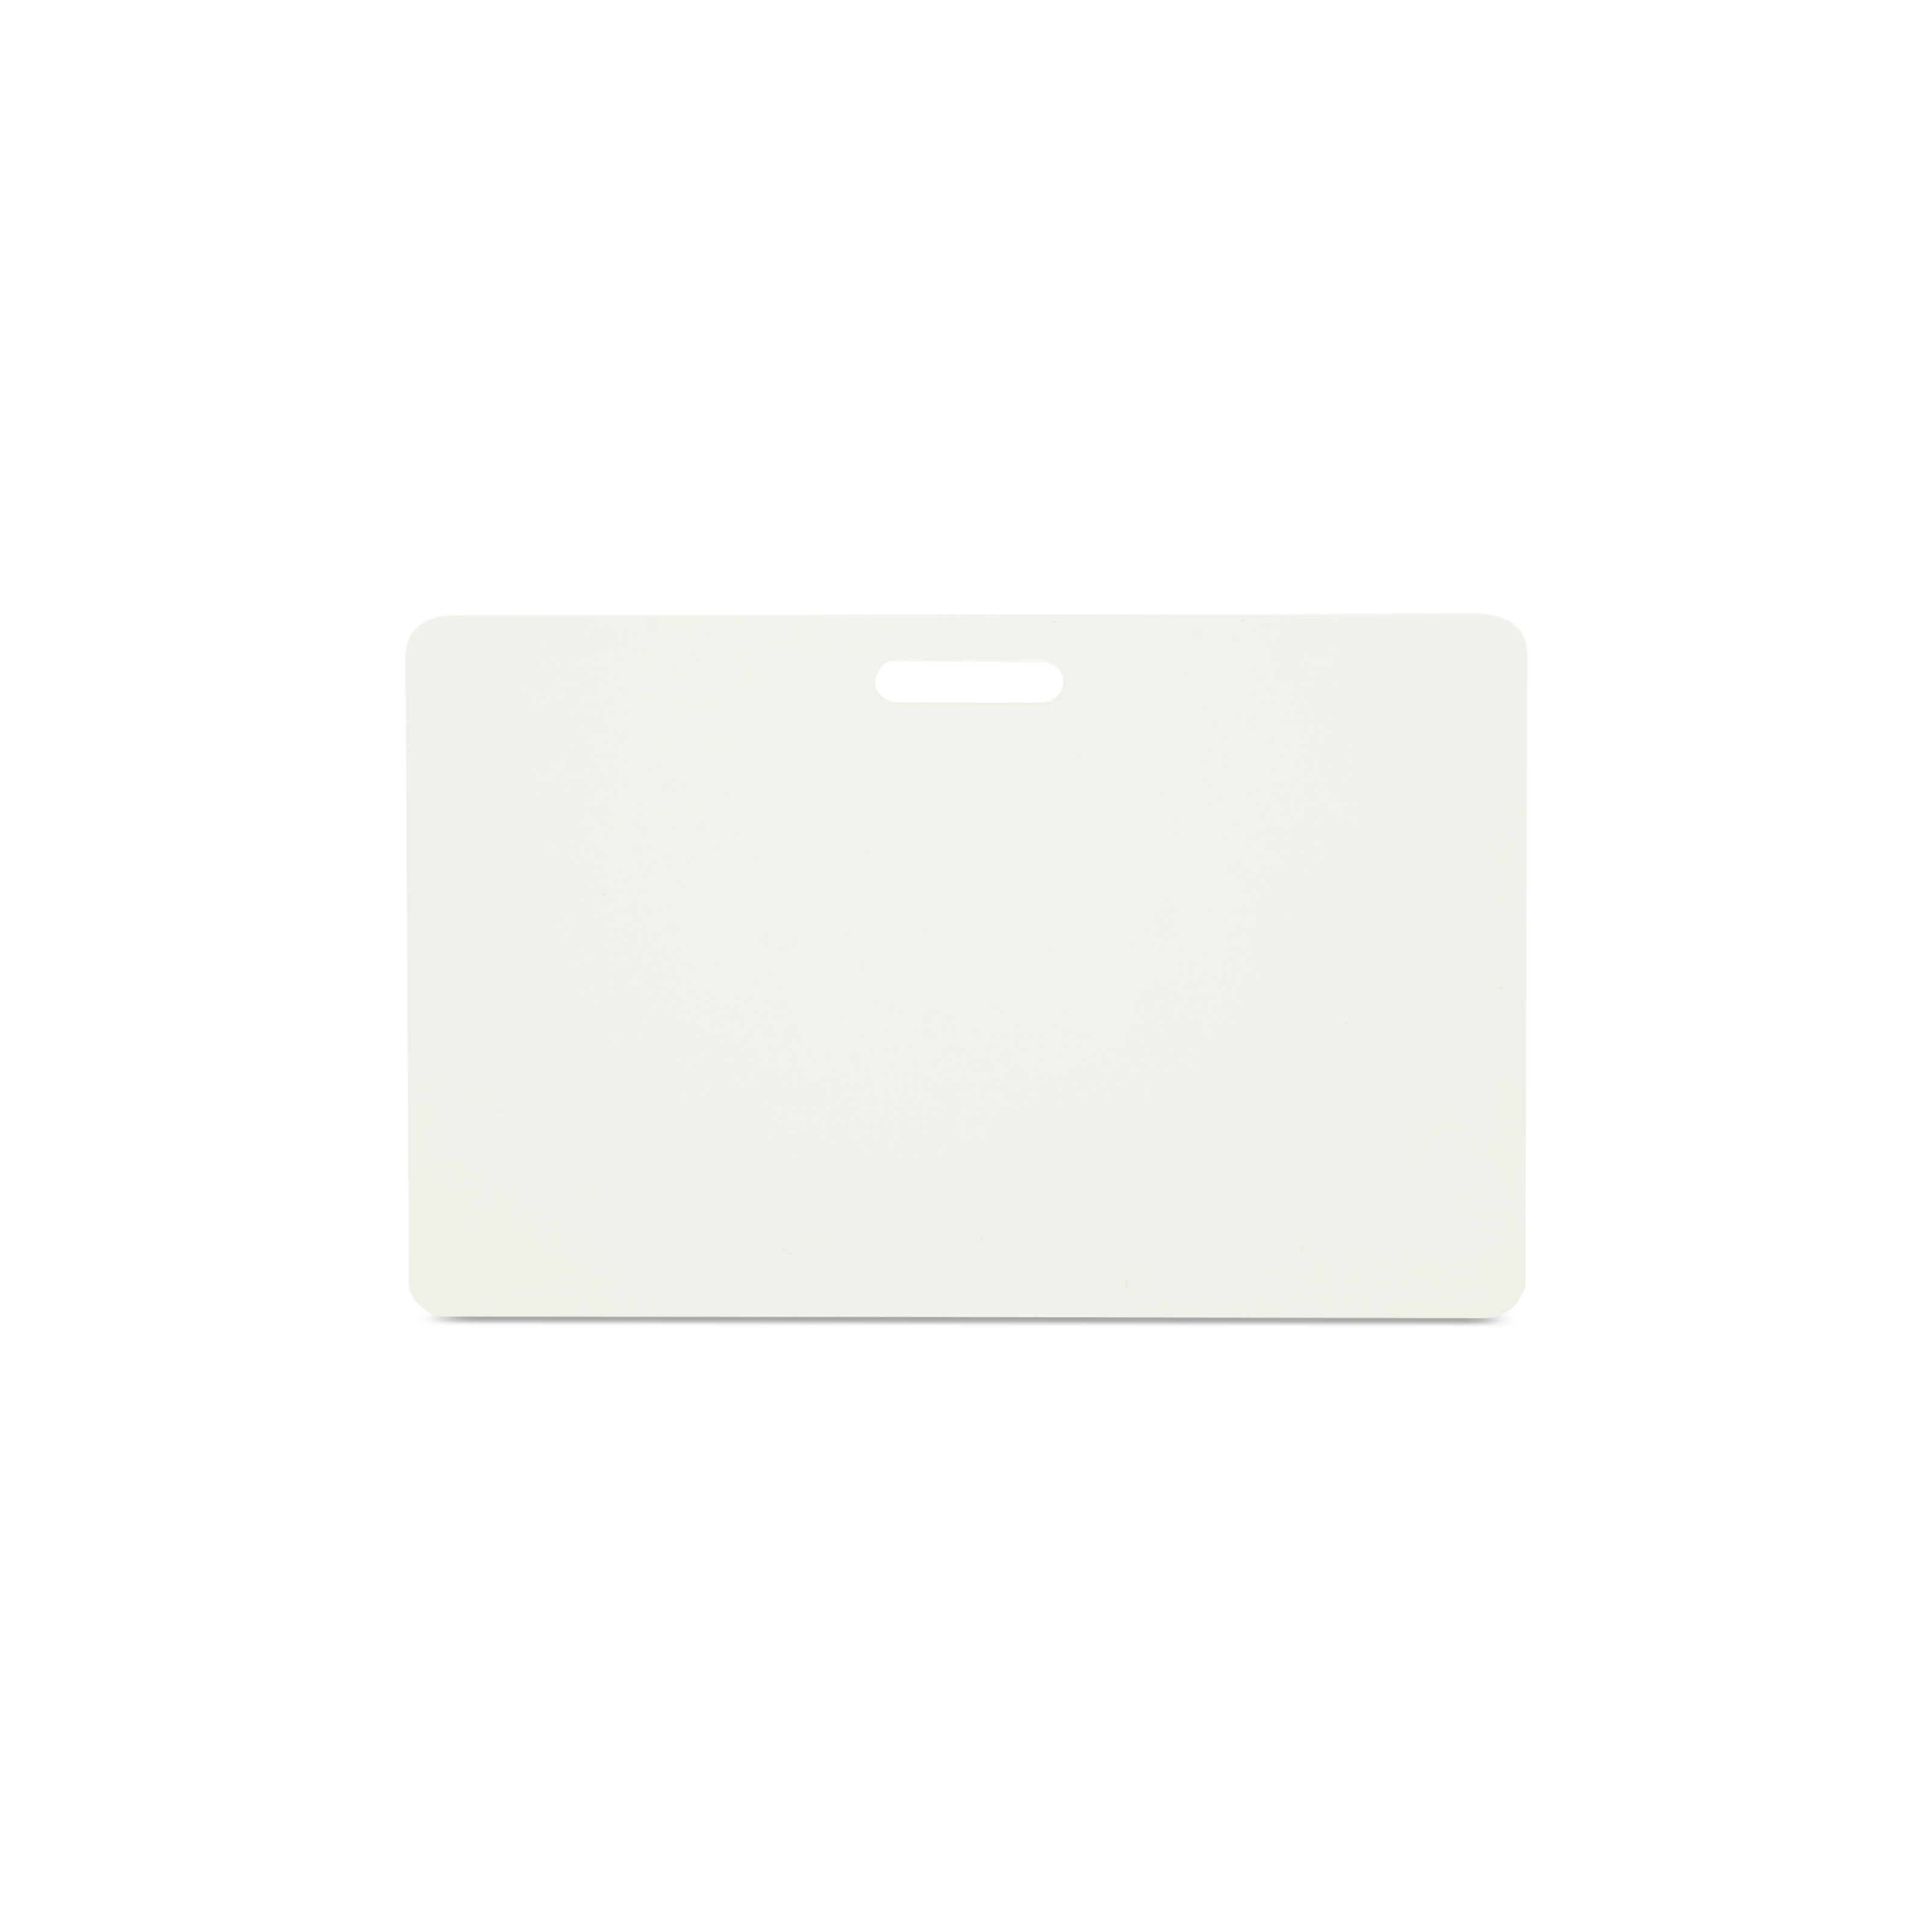 Horizontal stehende NFC Karte in weiß mit breiter Lochung